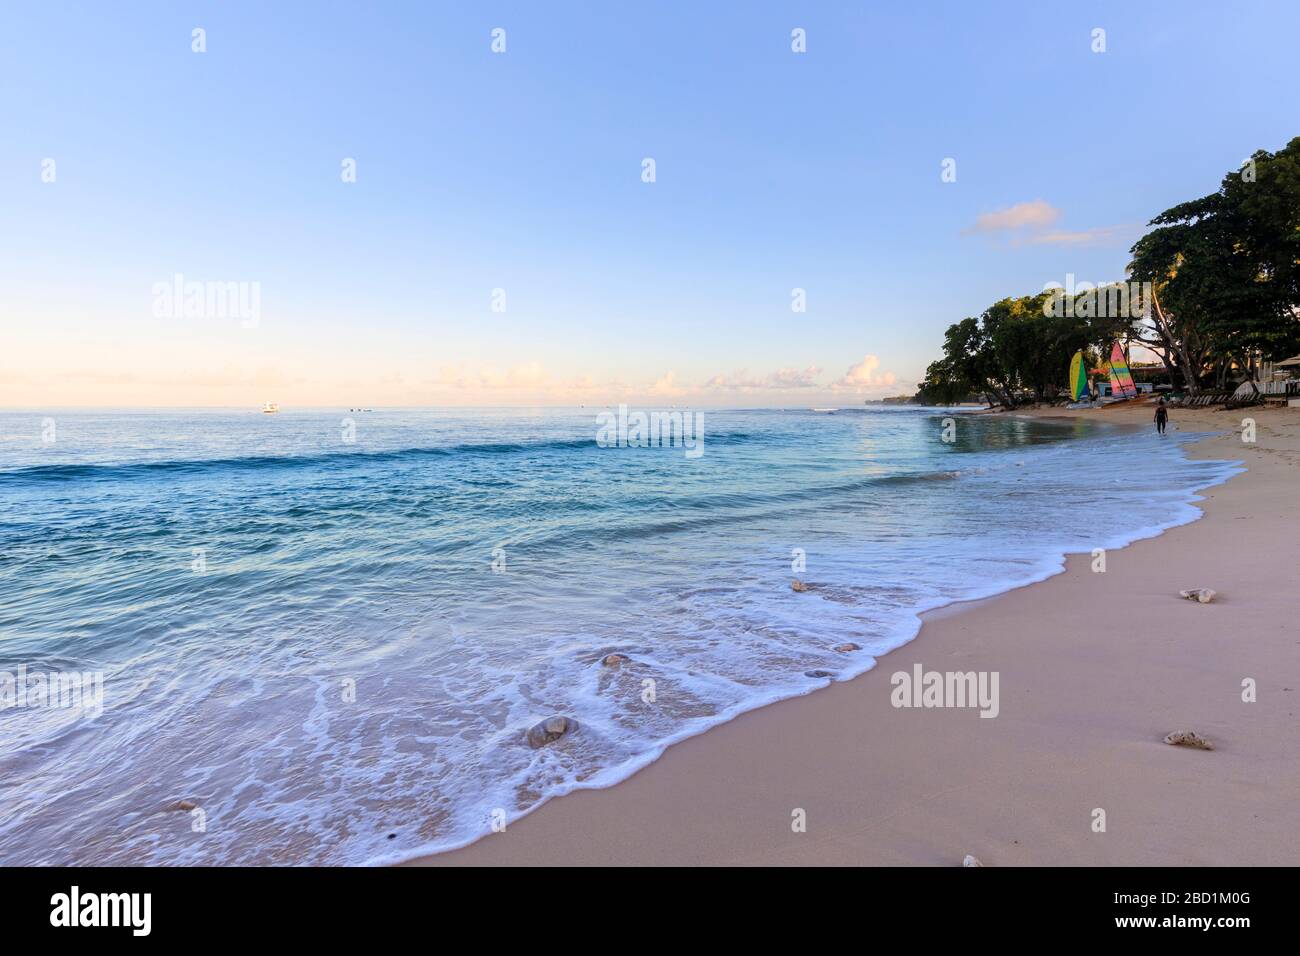 Paynes Bay, à l'aube, mer turquoise, bateaux à voile, plage de sable fin rose, belle côte ouest, Barbade, îles Windward, Caraïbes Banque D'Images